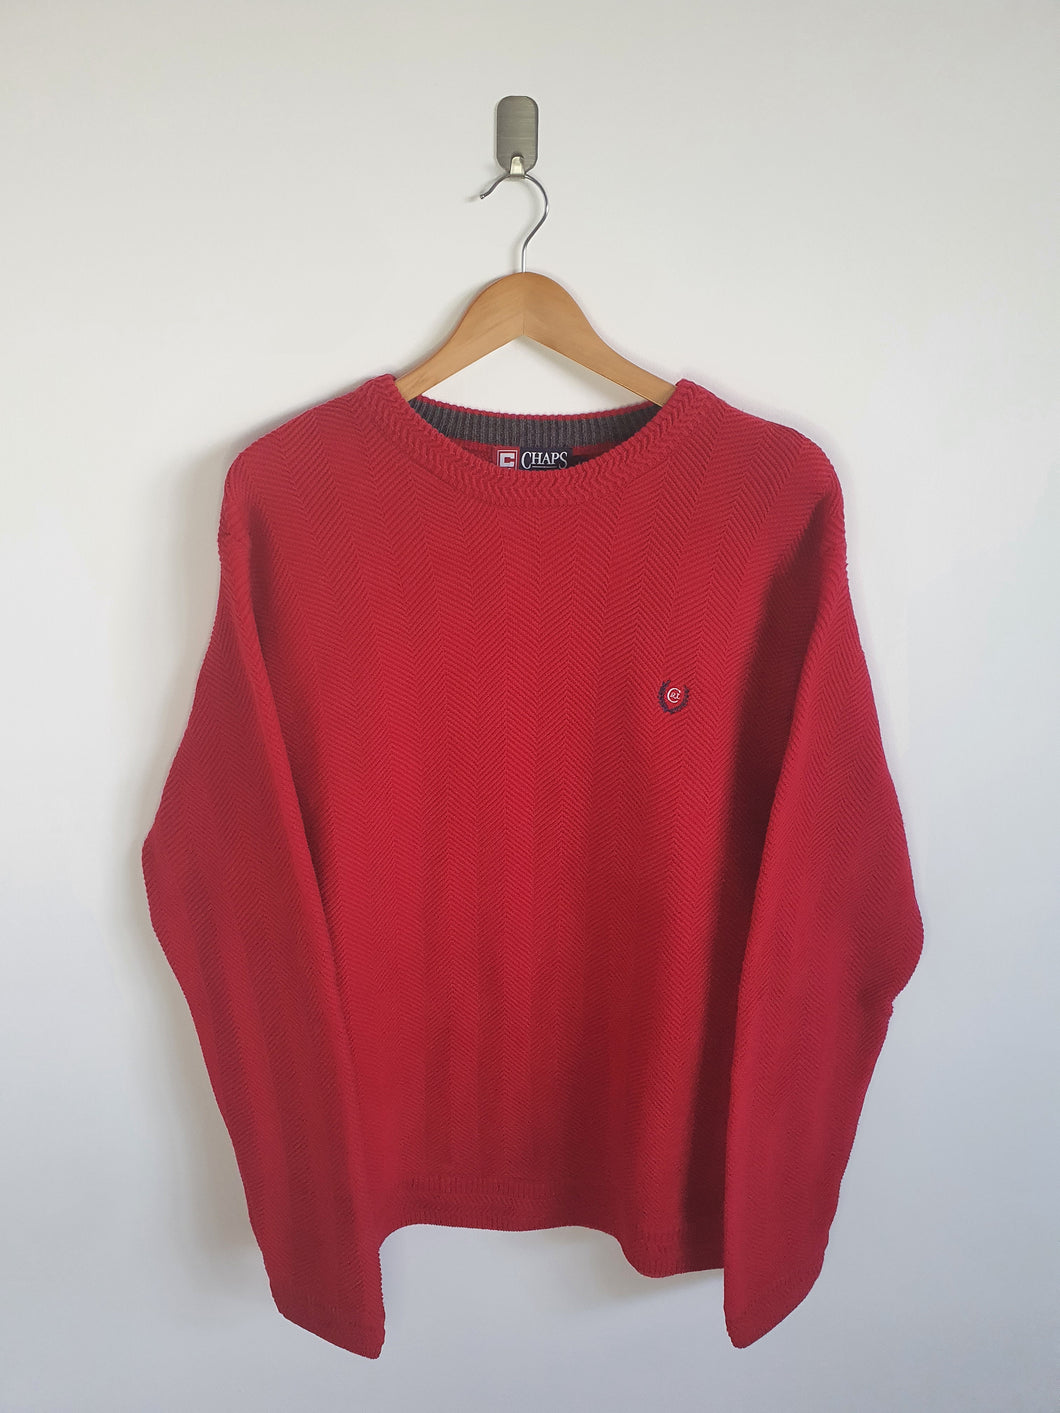 Ralph Lauren Chaps Red Crew Neck Sweatshirt - M